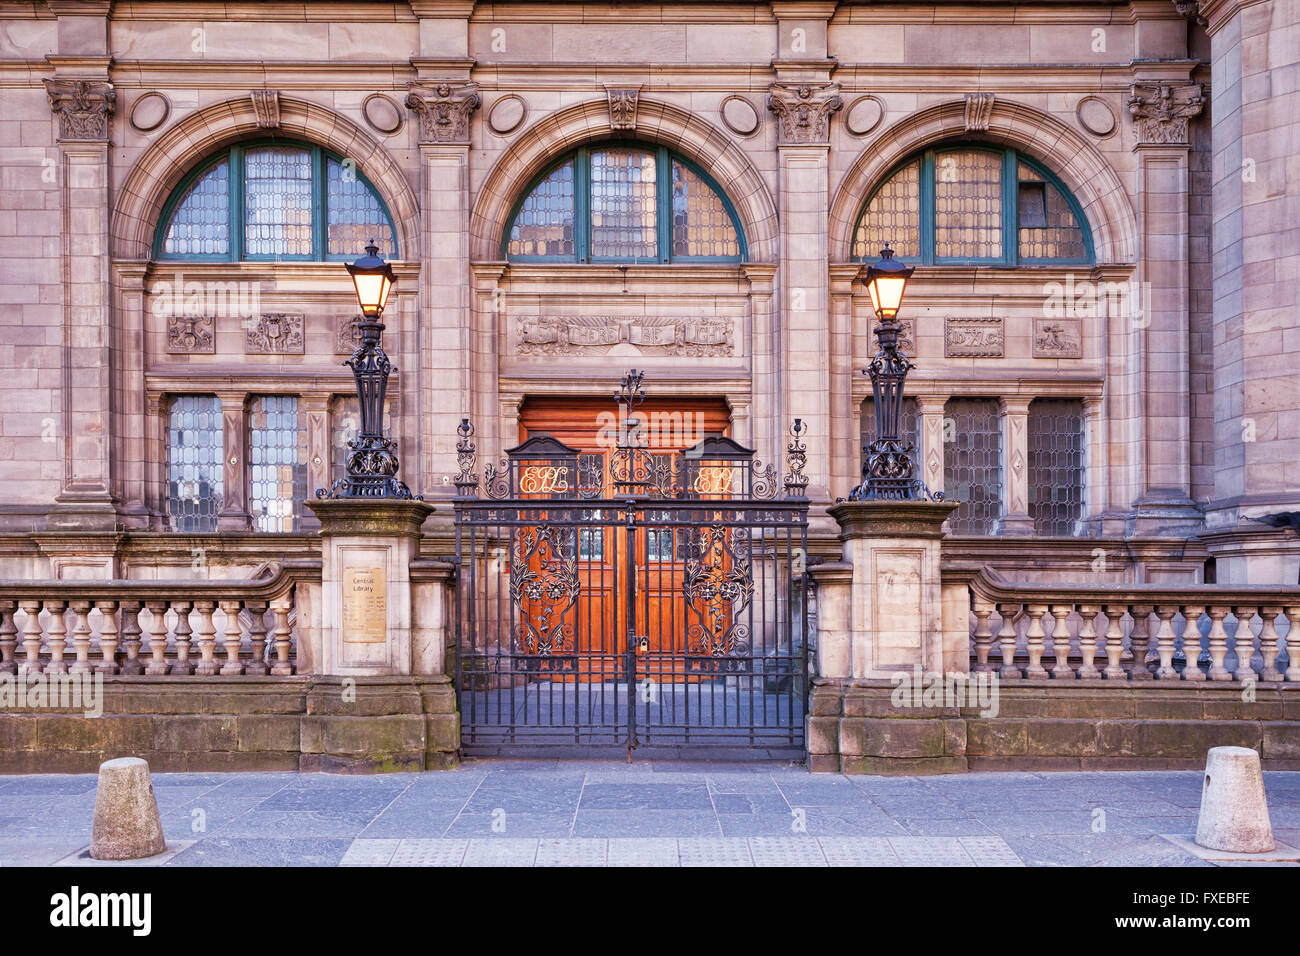 Bibliothèque centrale, George iv Bridge, Edinburgh, Ecosse, Royaume-Uni Banque D'Images